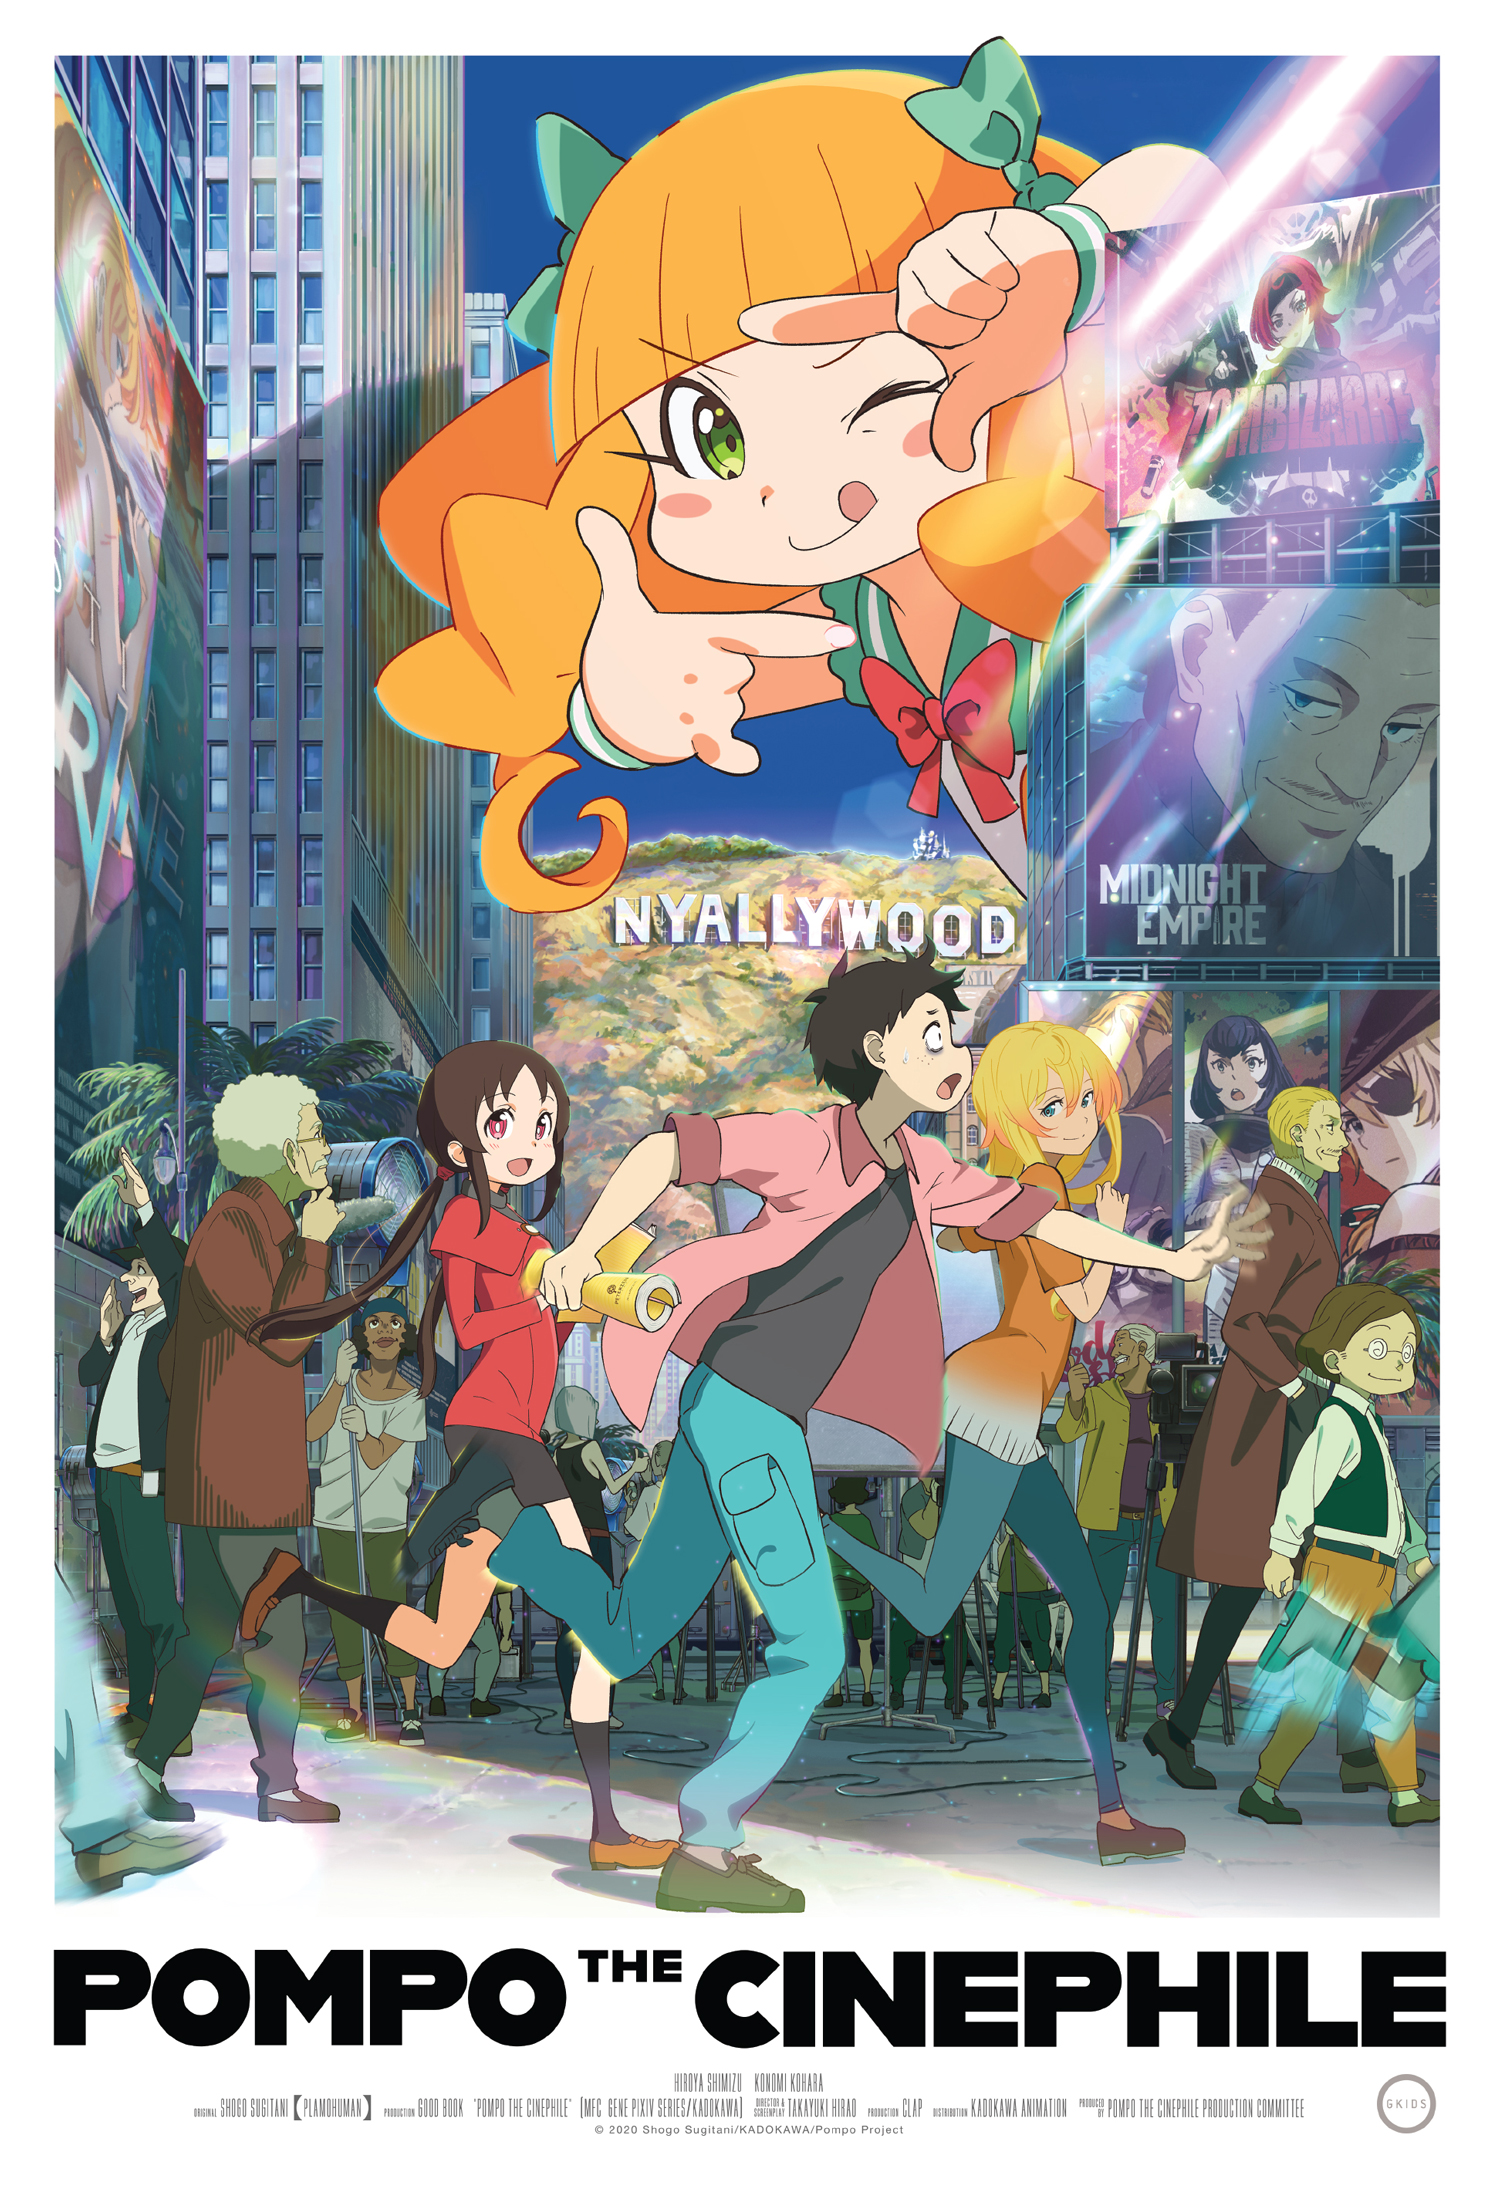 Das offizielle Filmplakat für die GKIDS US-Veröffentlichung des Anime-Kinofilms Pompo the Cinephile.  Das Poster zeigt Pompo im Hintergrund, die mit ihren Fingern einen Kamerasucher formt, während die anderen Hauptfiguren im Vordergrund durch die geschäftigen Straßen der Großstadt Nyallywood schlurfen.